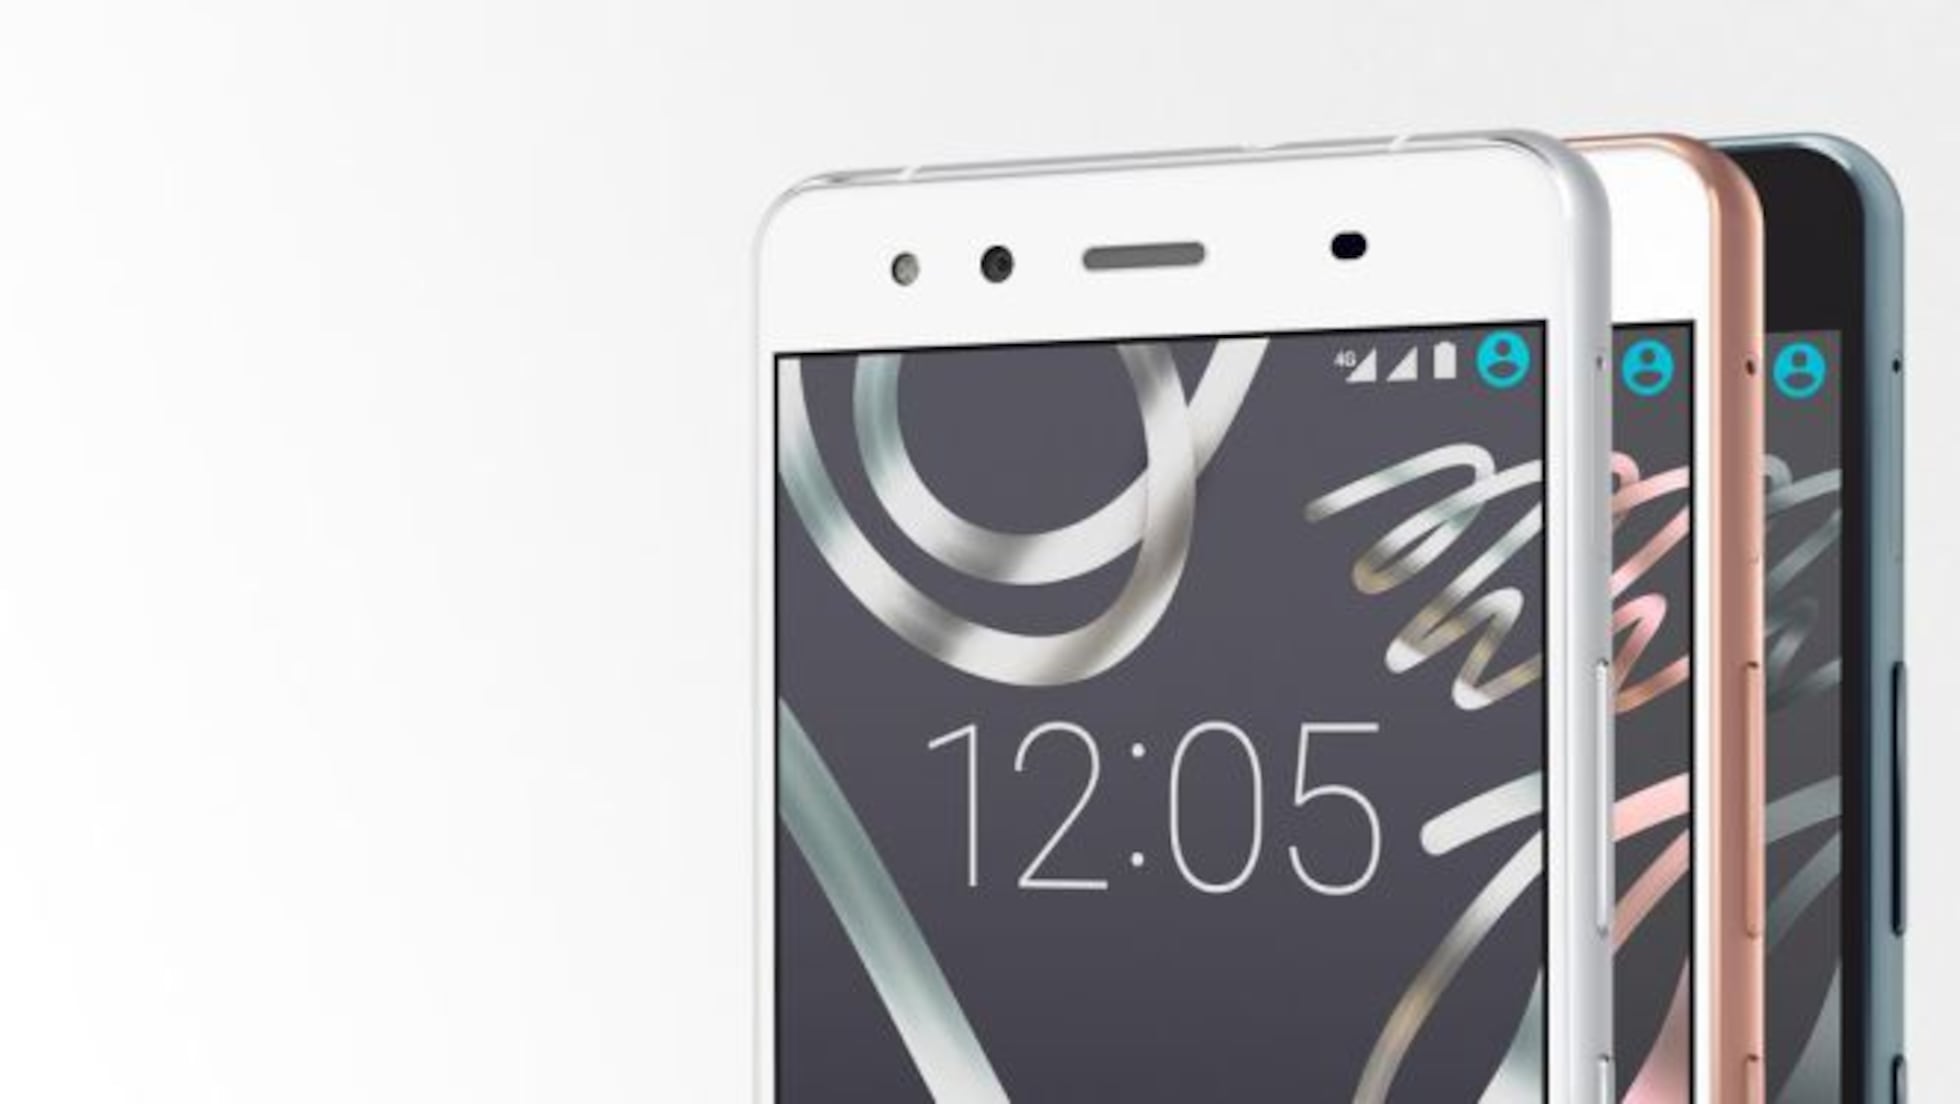 Bq Aquaris X5 Su Primer Móvil De Aluminio Llega Por 229 Euros Smartphones Smartlife Cinco 3999